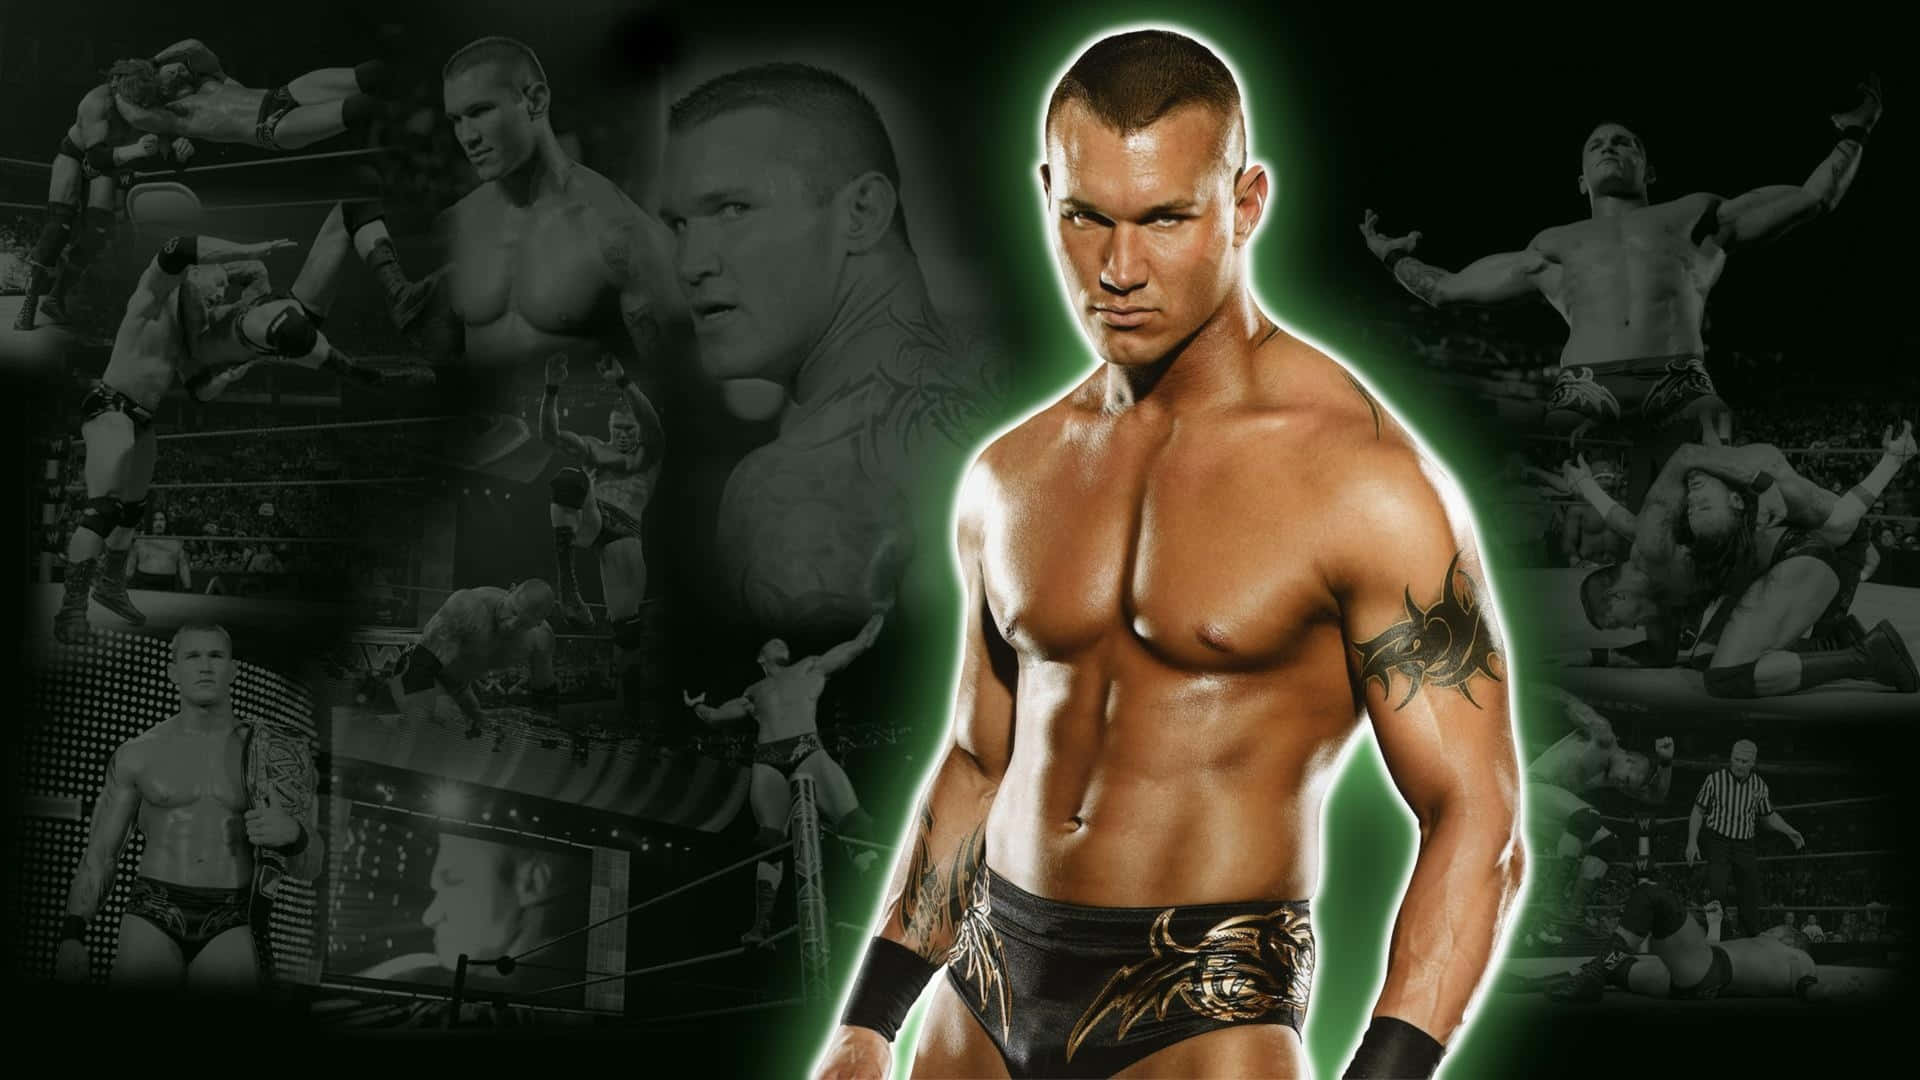 WWE wrestlere tapeter Wallpaper